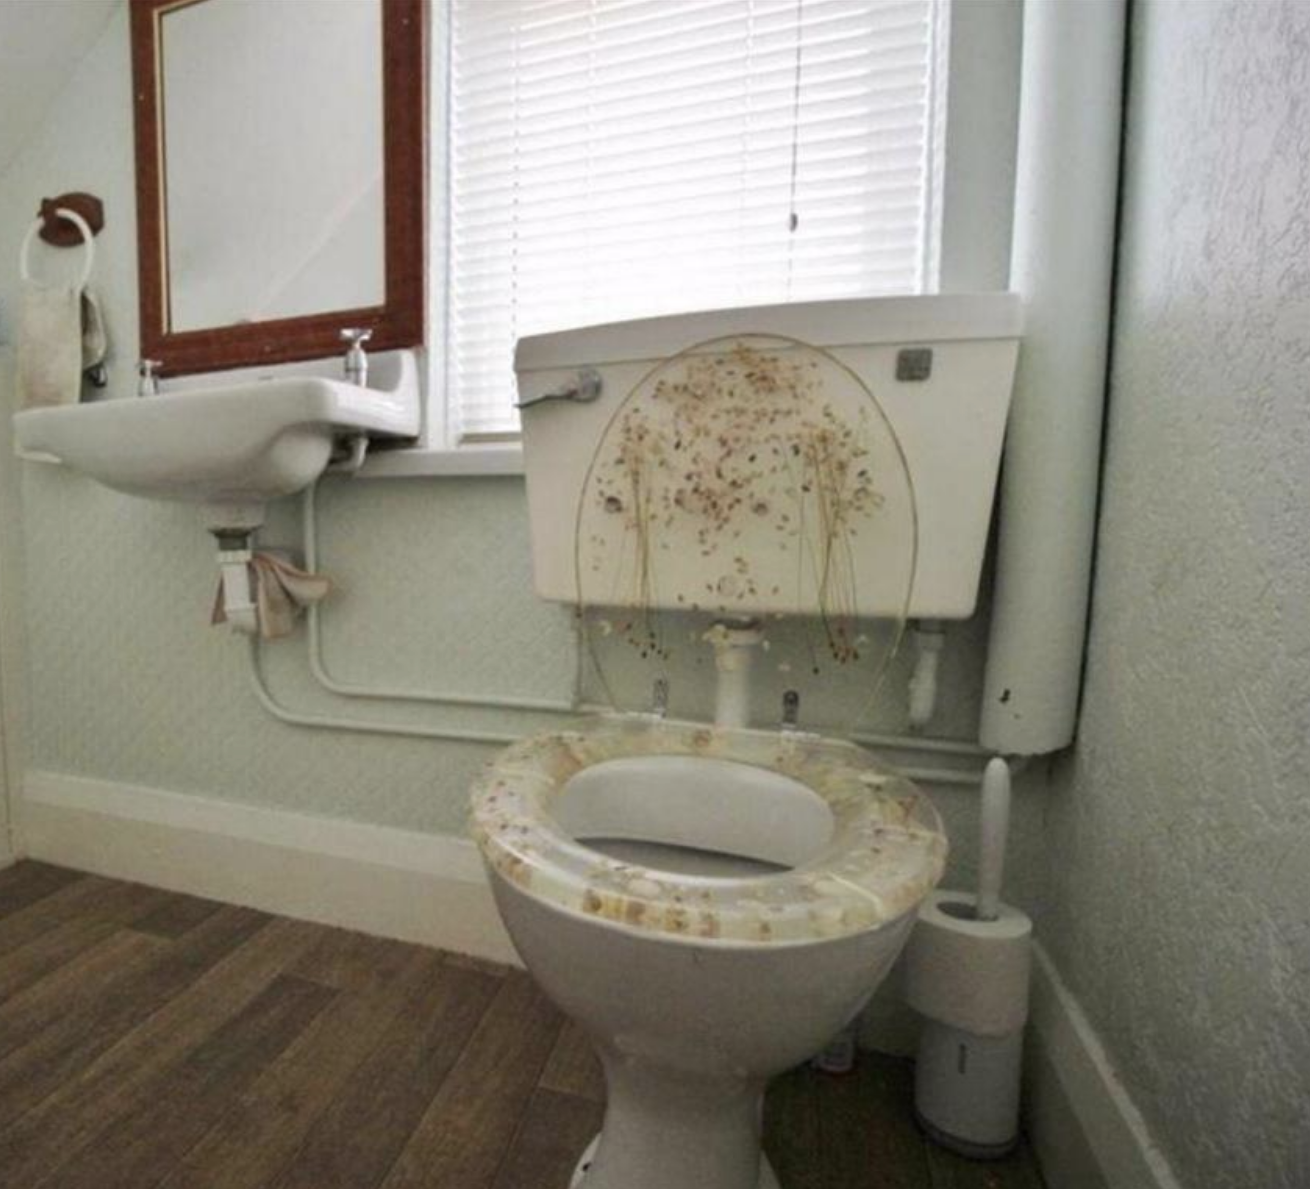 A see-through toilet seat